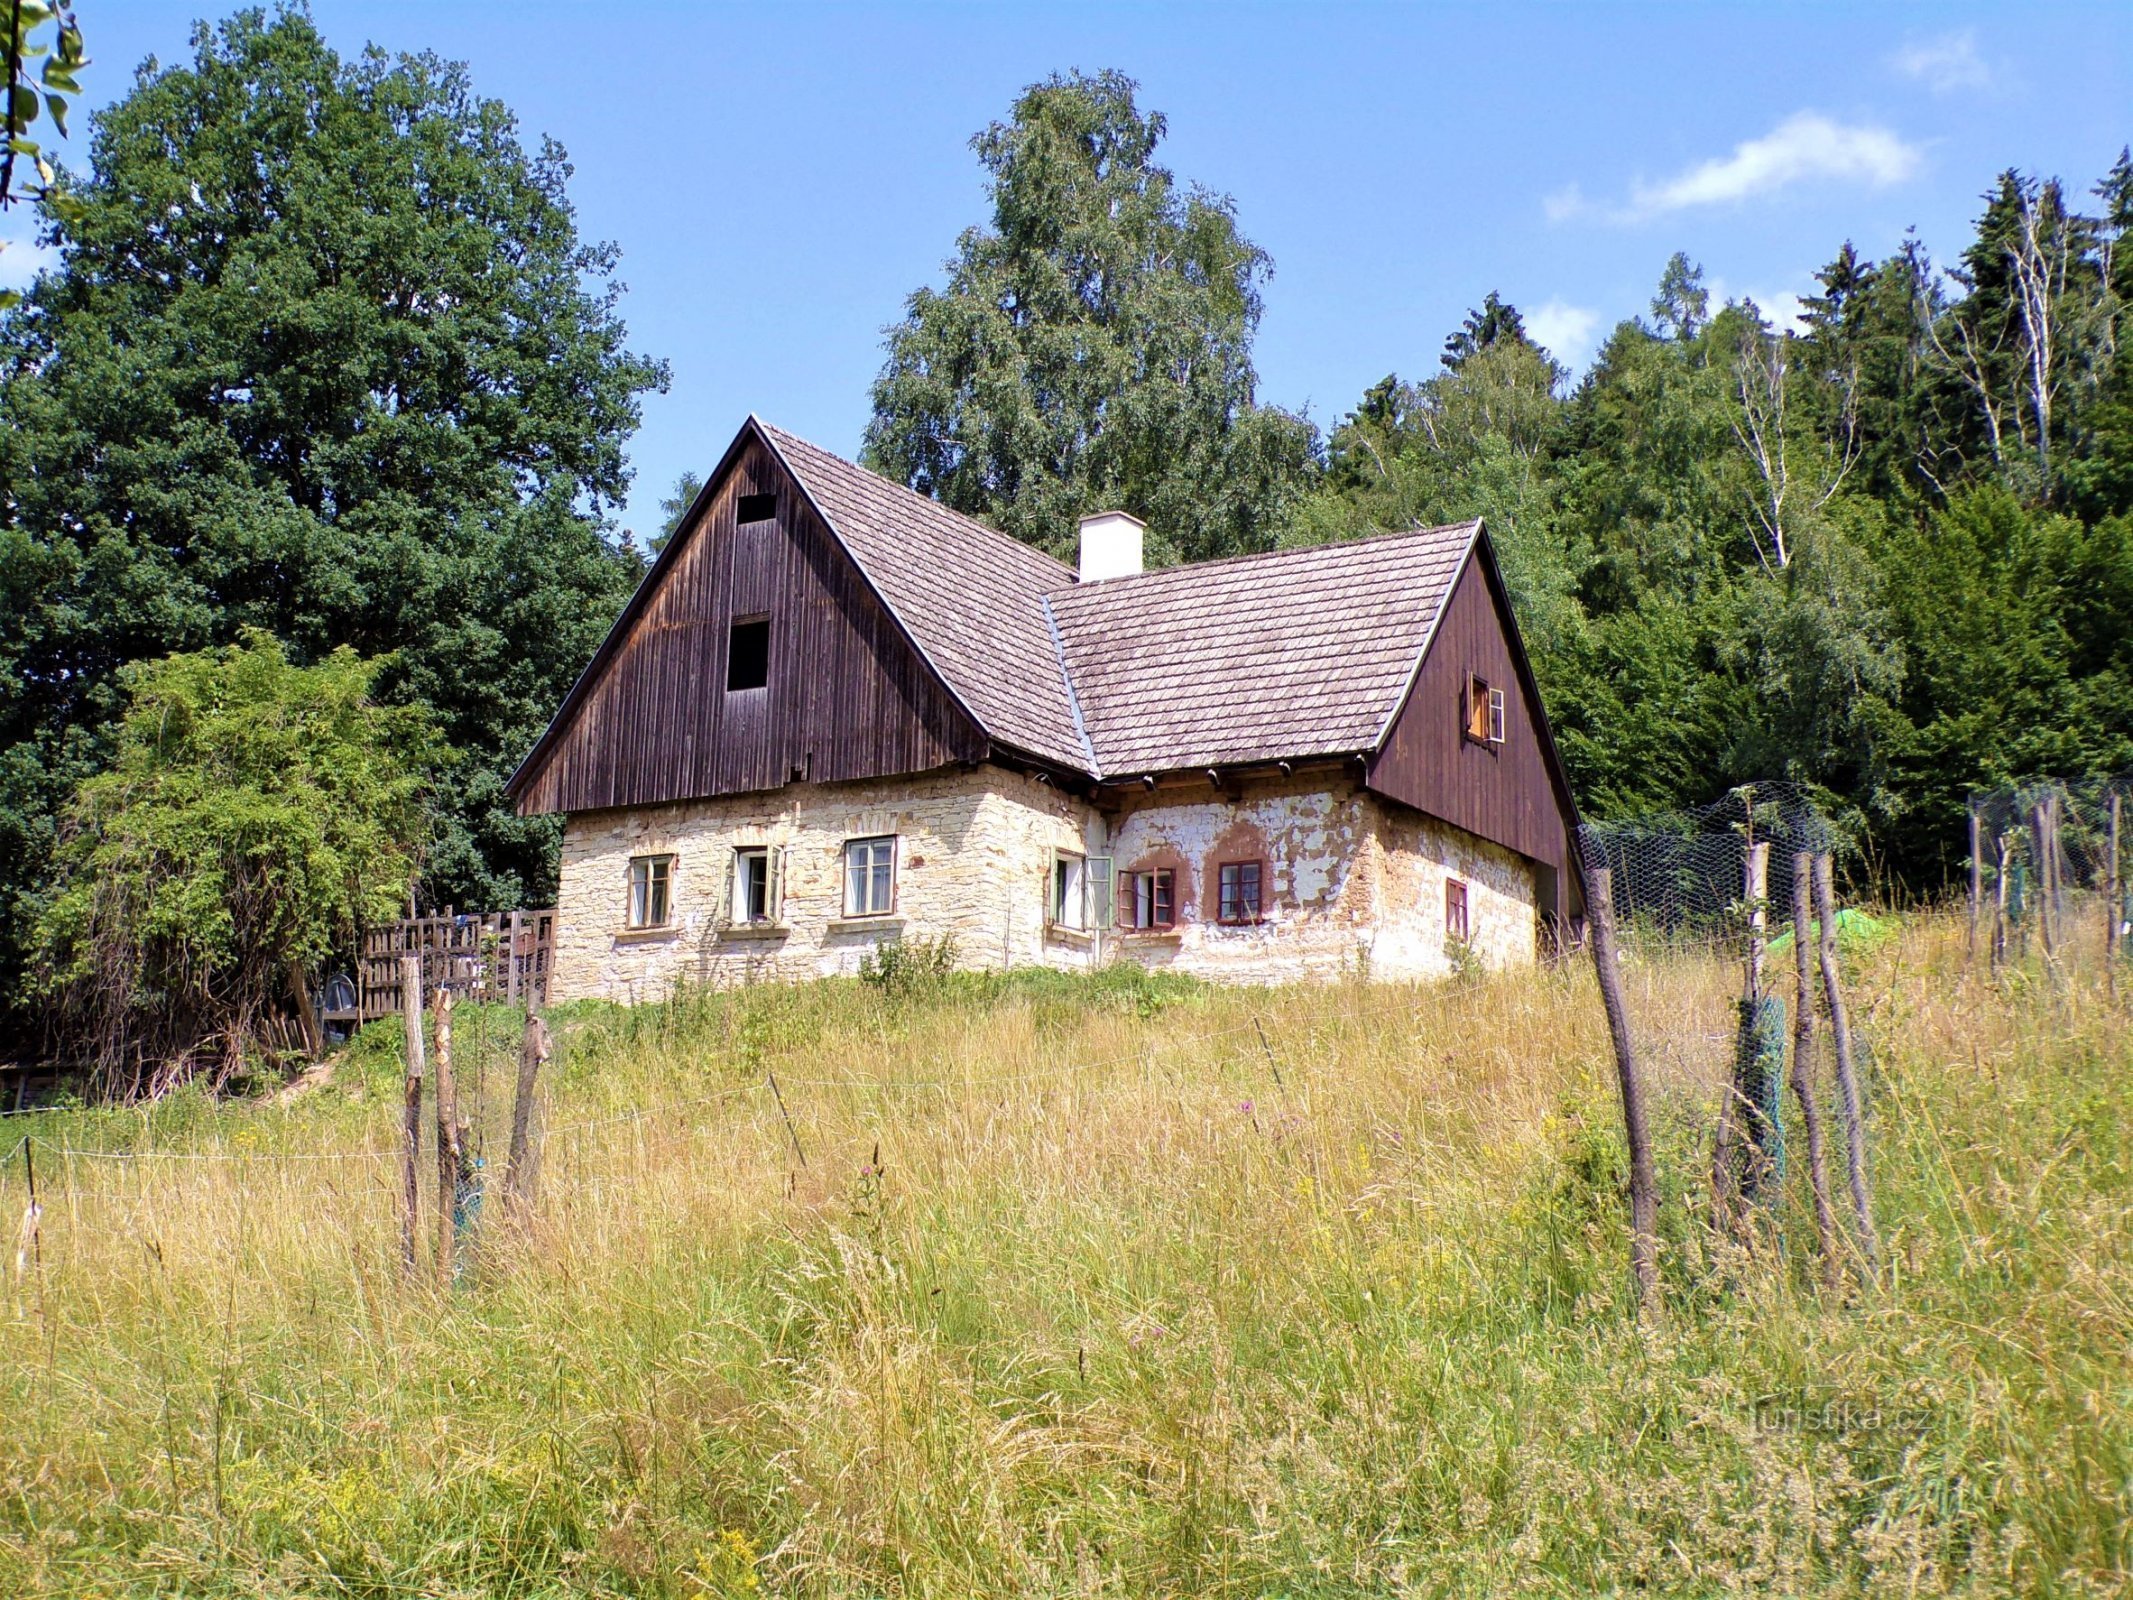 Kuća br. 501 u Bokoušu (Velká Bukovina, 13.7.2021.)